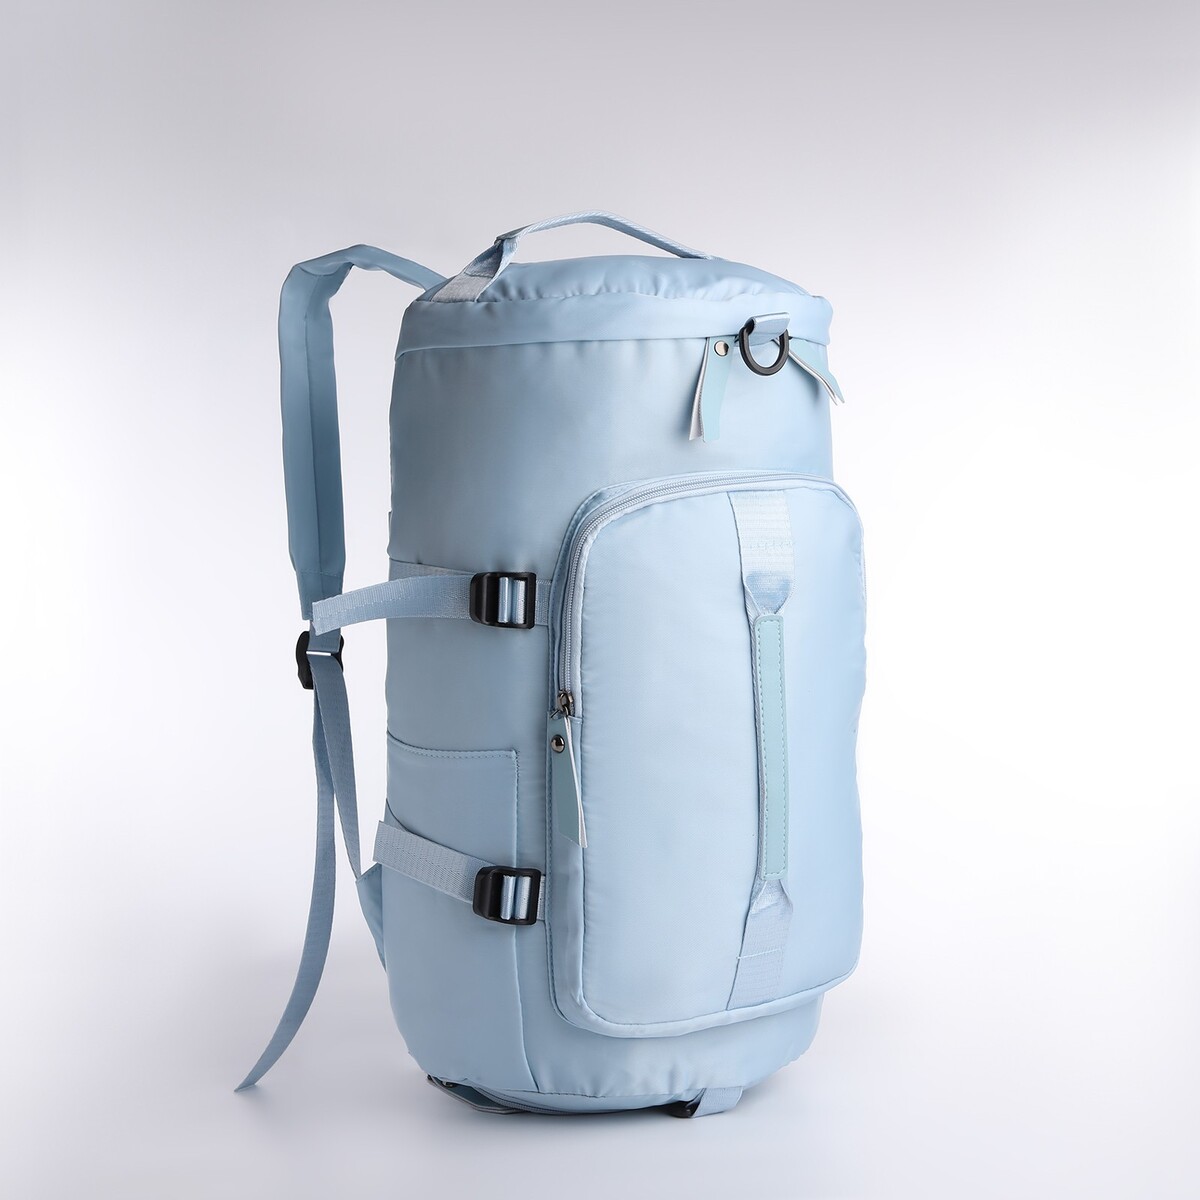 Рюкзак-сумка на молнии, 4 наружных кармана, отделение для обуви, цвет голубой